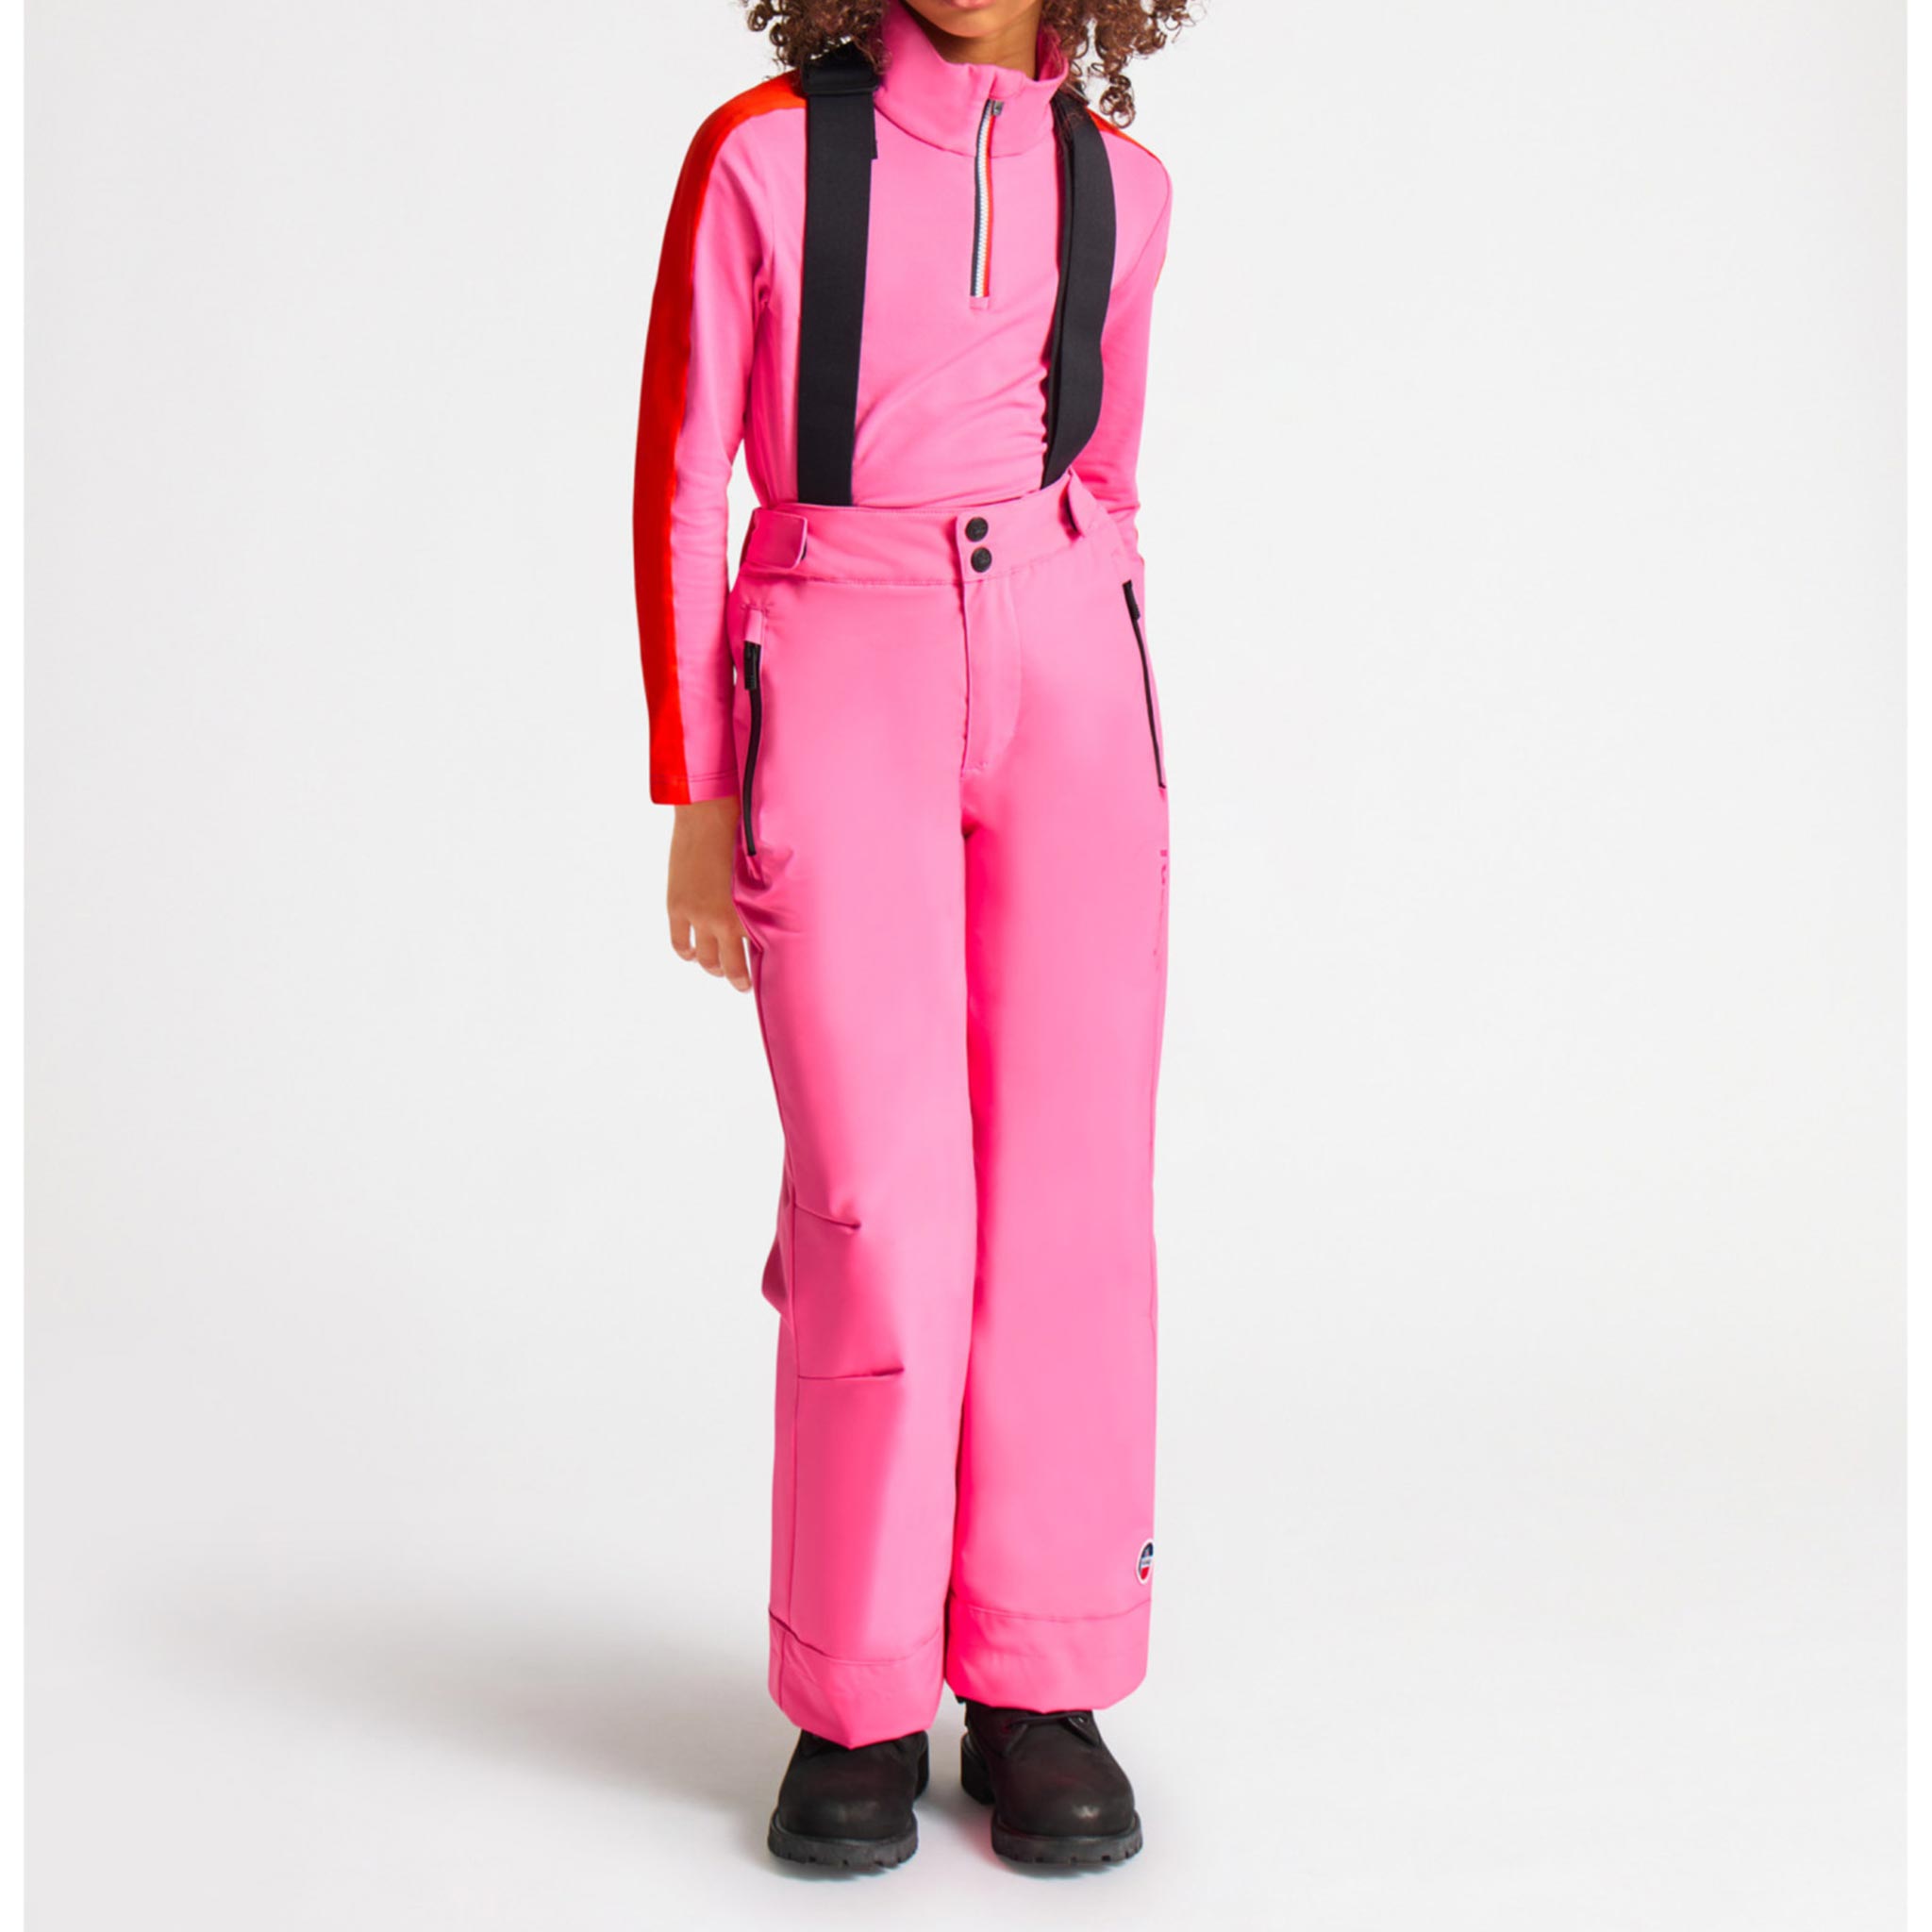 Atlas Kids Ski Pants in Pop Pink